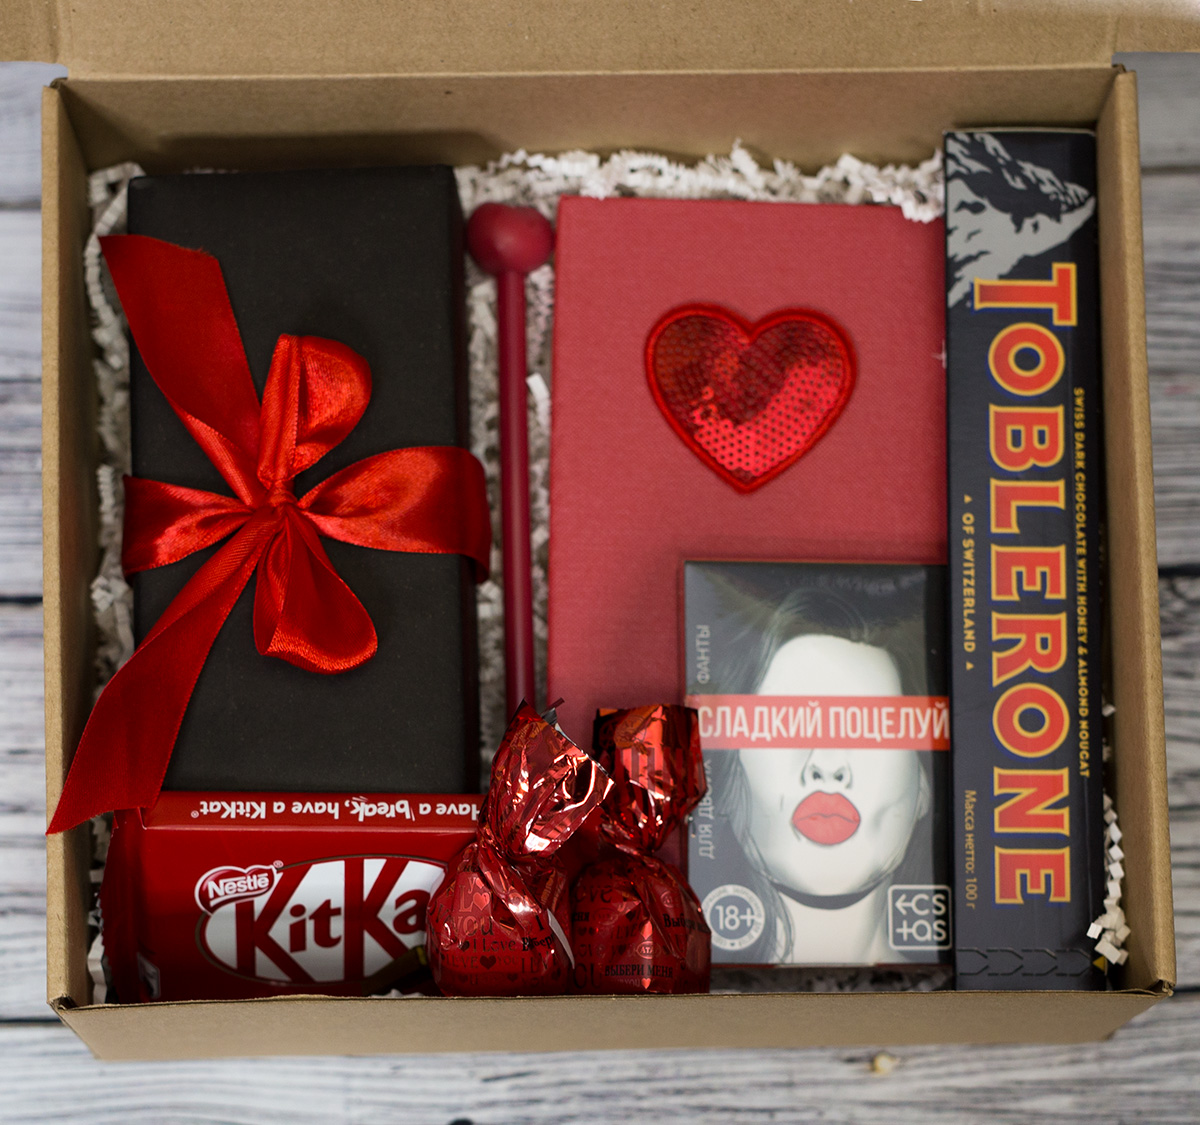 Купить подарок на 14 февраля день влюбленных в интернет-магазине box-gifts.ru Москва